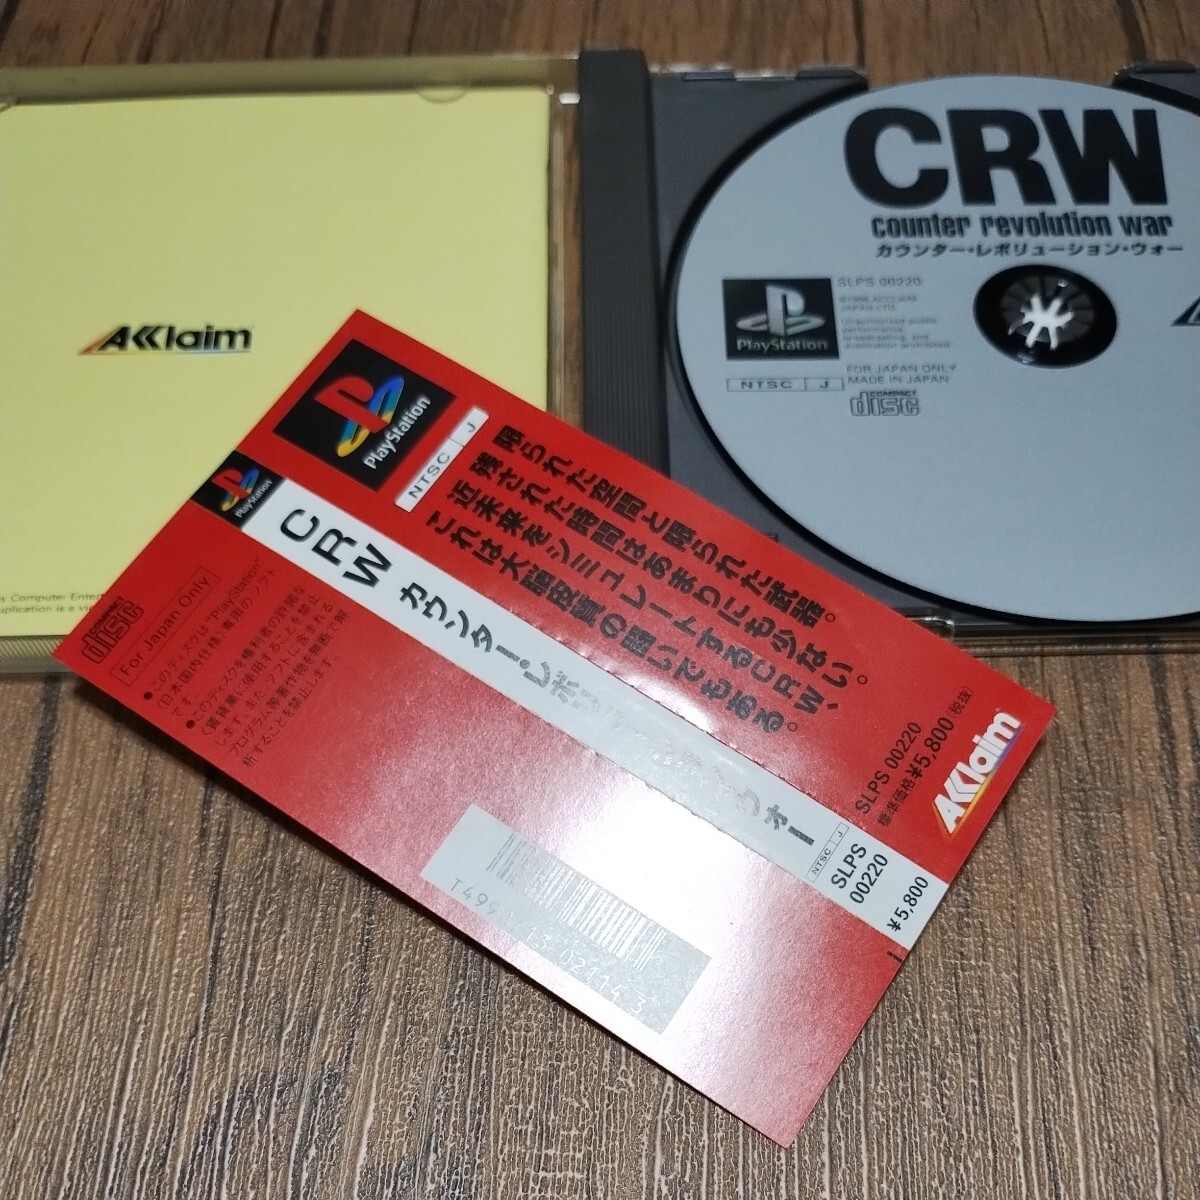 PlayStation プレイステーション プレステ PS1 PS ソフト 中古 CRW カウンターレボリューションウォー アクレイムジャパン Aklaim 管cの画像5